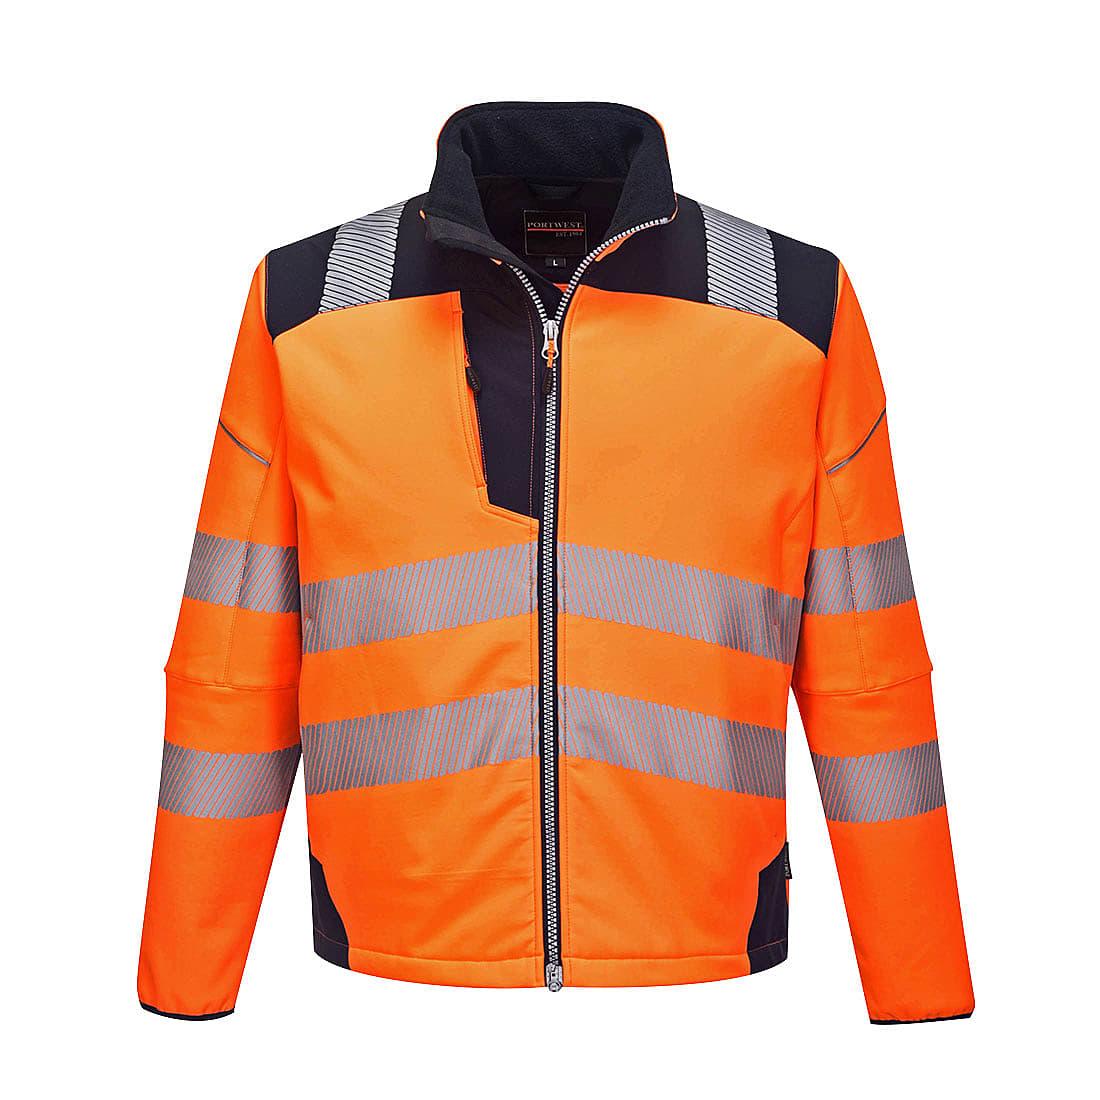 Portwest PW3 Hi-Viz Softshell Jacket in Orange / Navy (Product Code: T402)